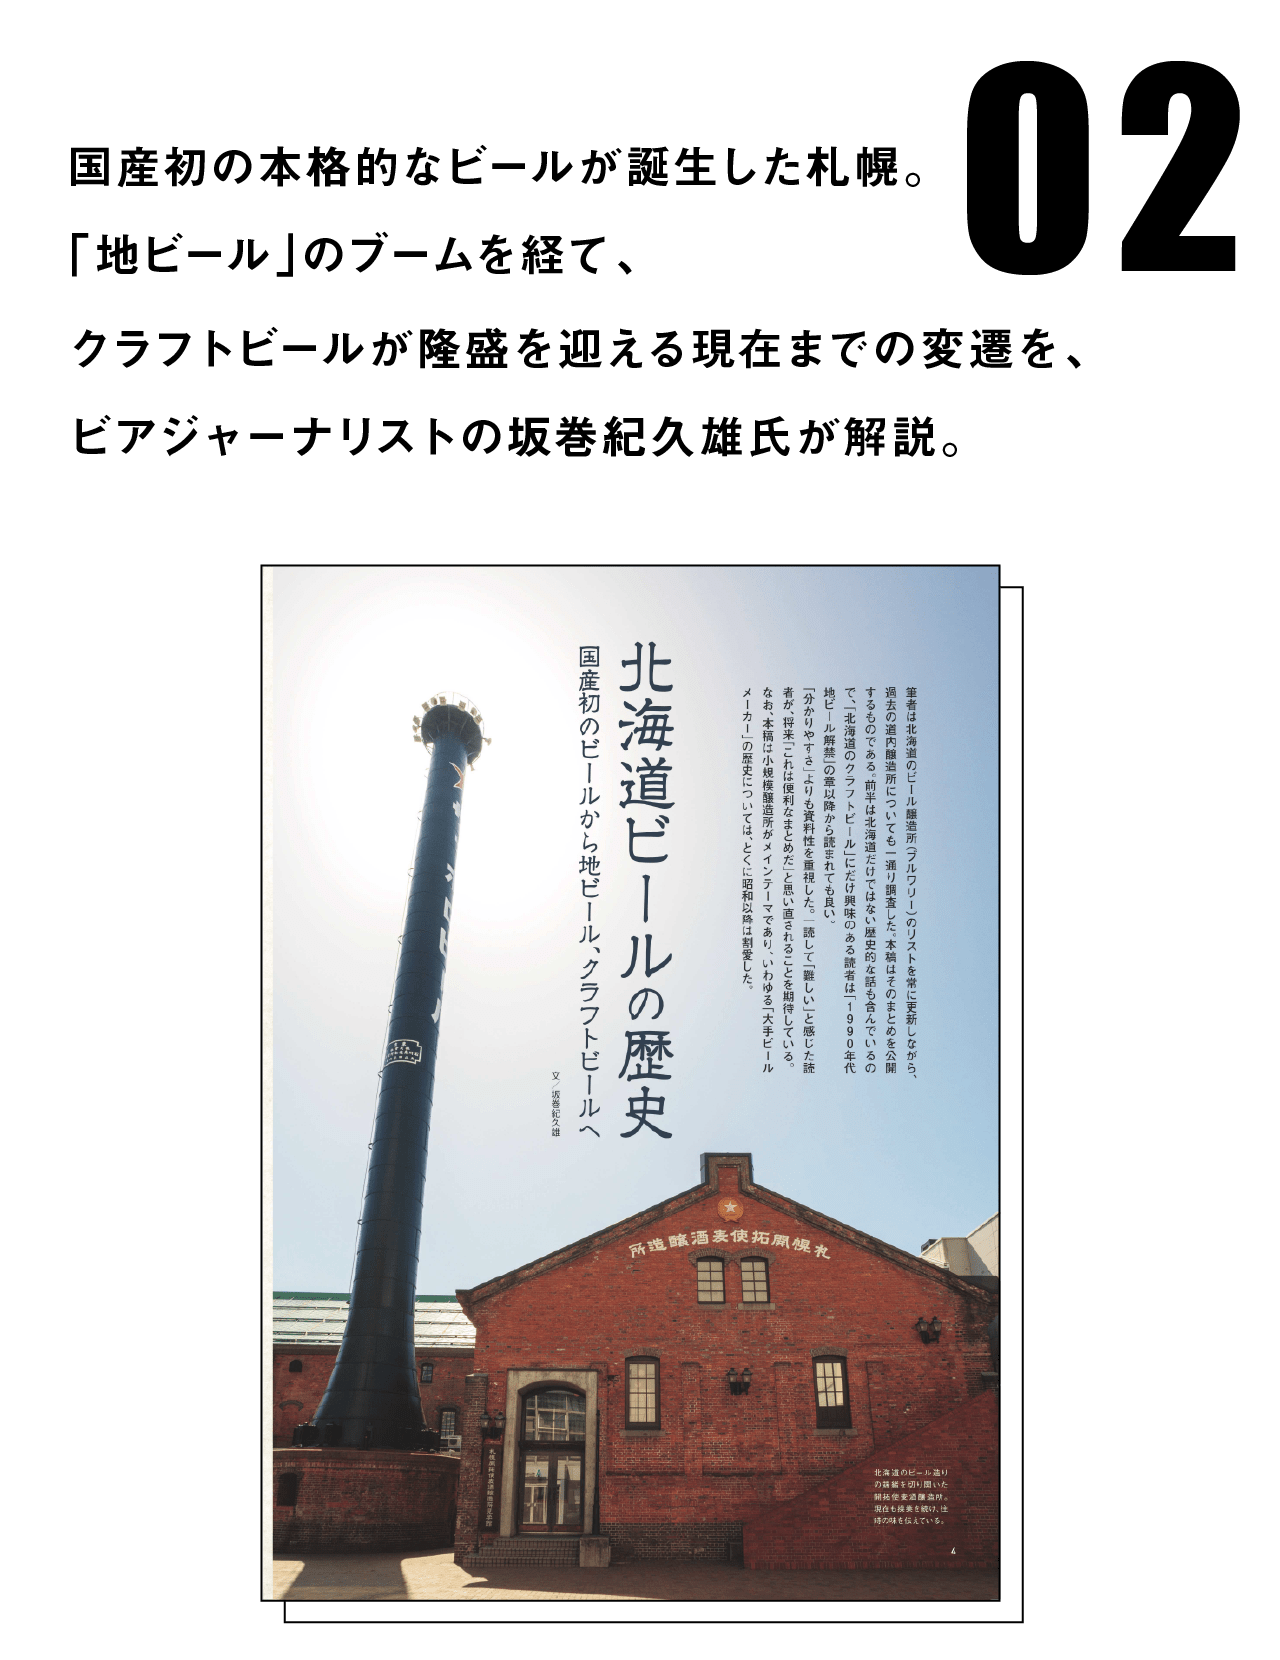 国産初の本格的なビールが誕生した札幌。「地ビール」のブームを経て、クラフトビールが隆盛を迎える現在までの変遷を、ビアジャーナリストの坂巻紀久雄氏が解説。